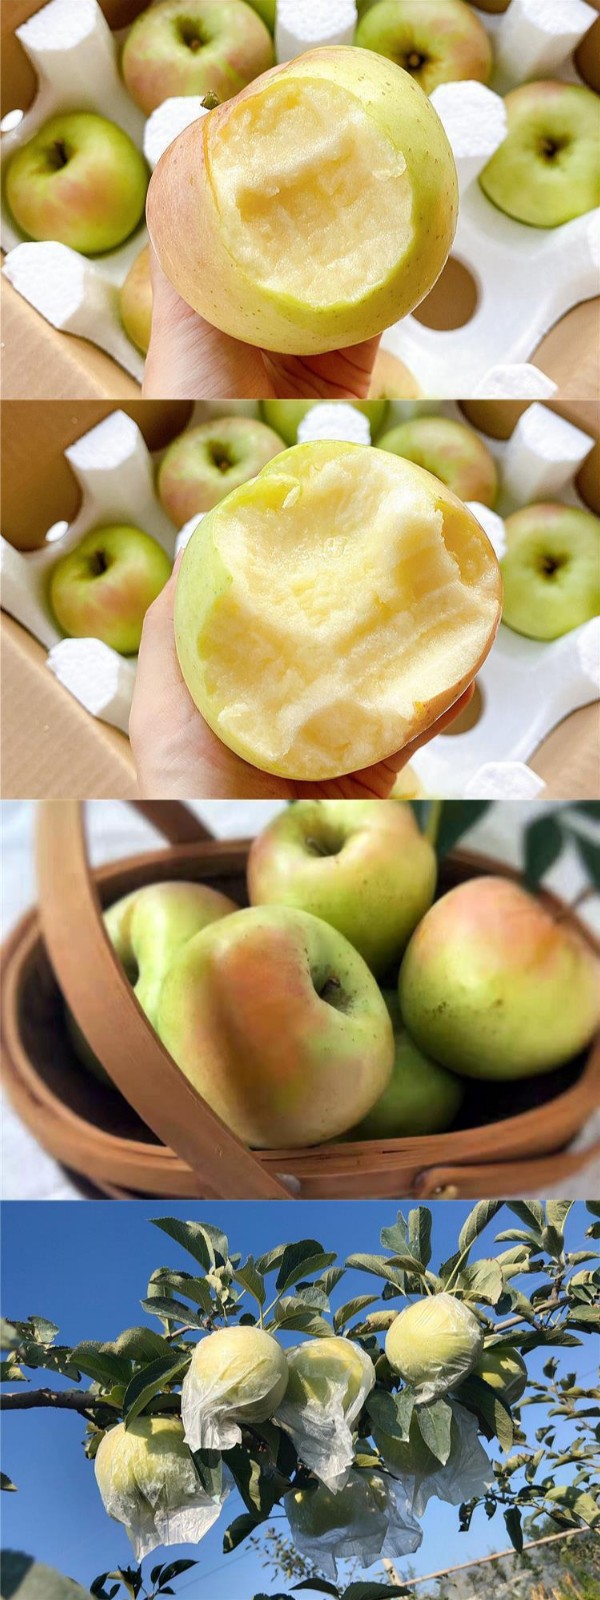 5斤大果山东青岛宝山明月苹果日本青森水蜜桃苹果王林苹果青苹果脆甜